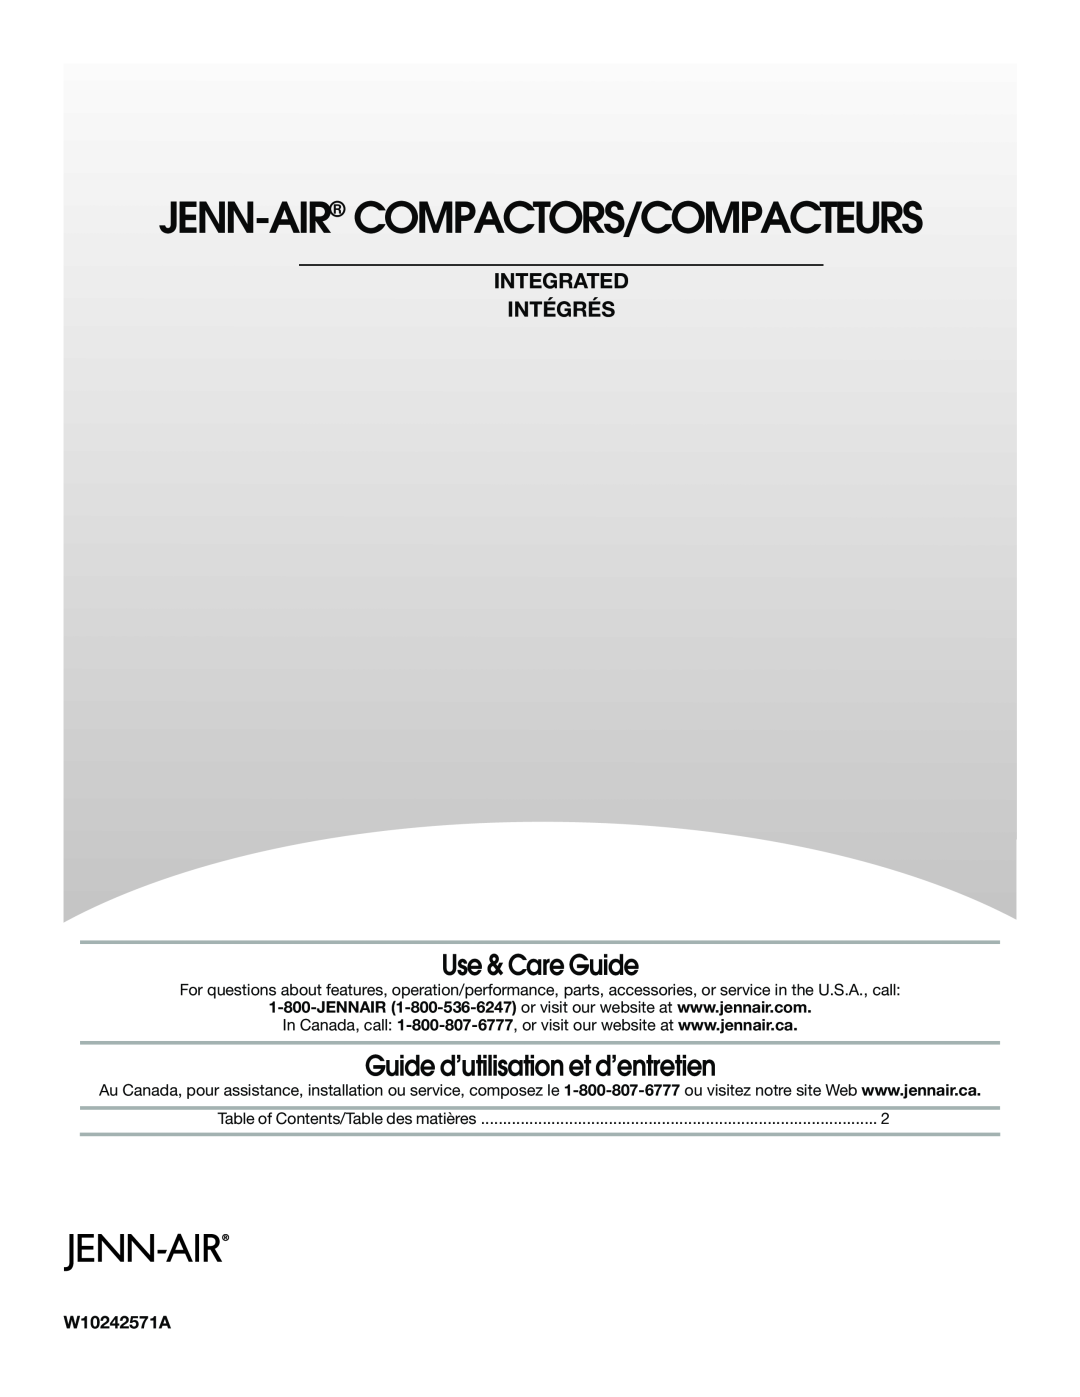 Jenn-Air W10242571A manual Use & Care Guide, Guide d’utilisation et d’entretien, Jenn-Air Compactors/Compacteurs 